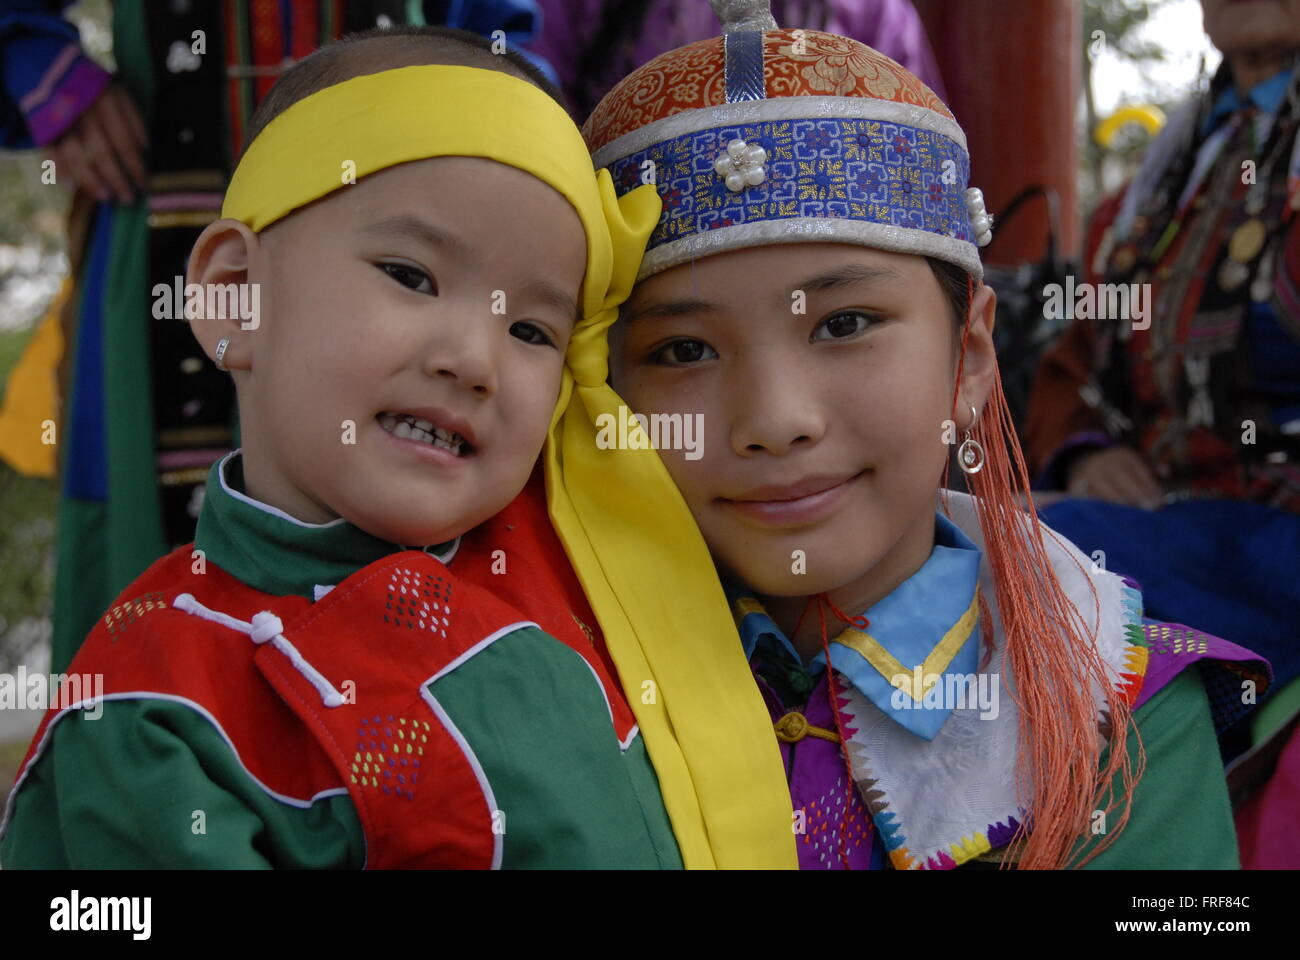 Mongolie - 13/07/2010 - Mongolie / Ulan Bator / Oulan-bator - Portrait d'enfants mongols dans leur tenue traditionnelle - Banque D'Images